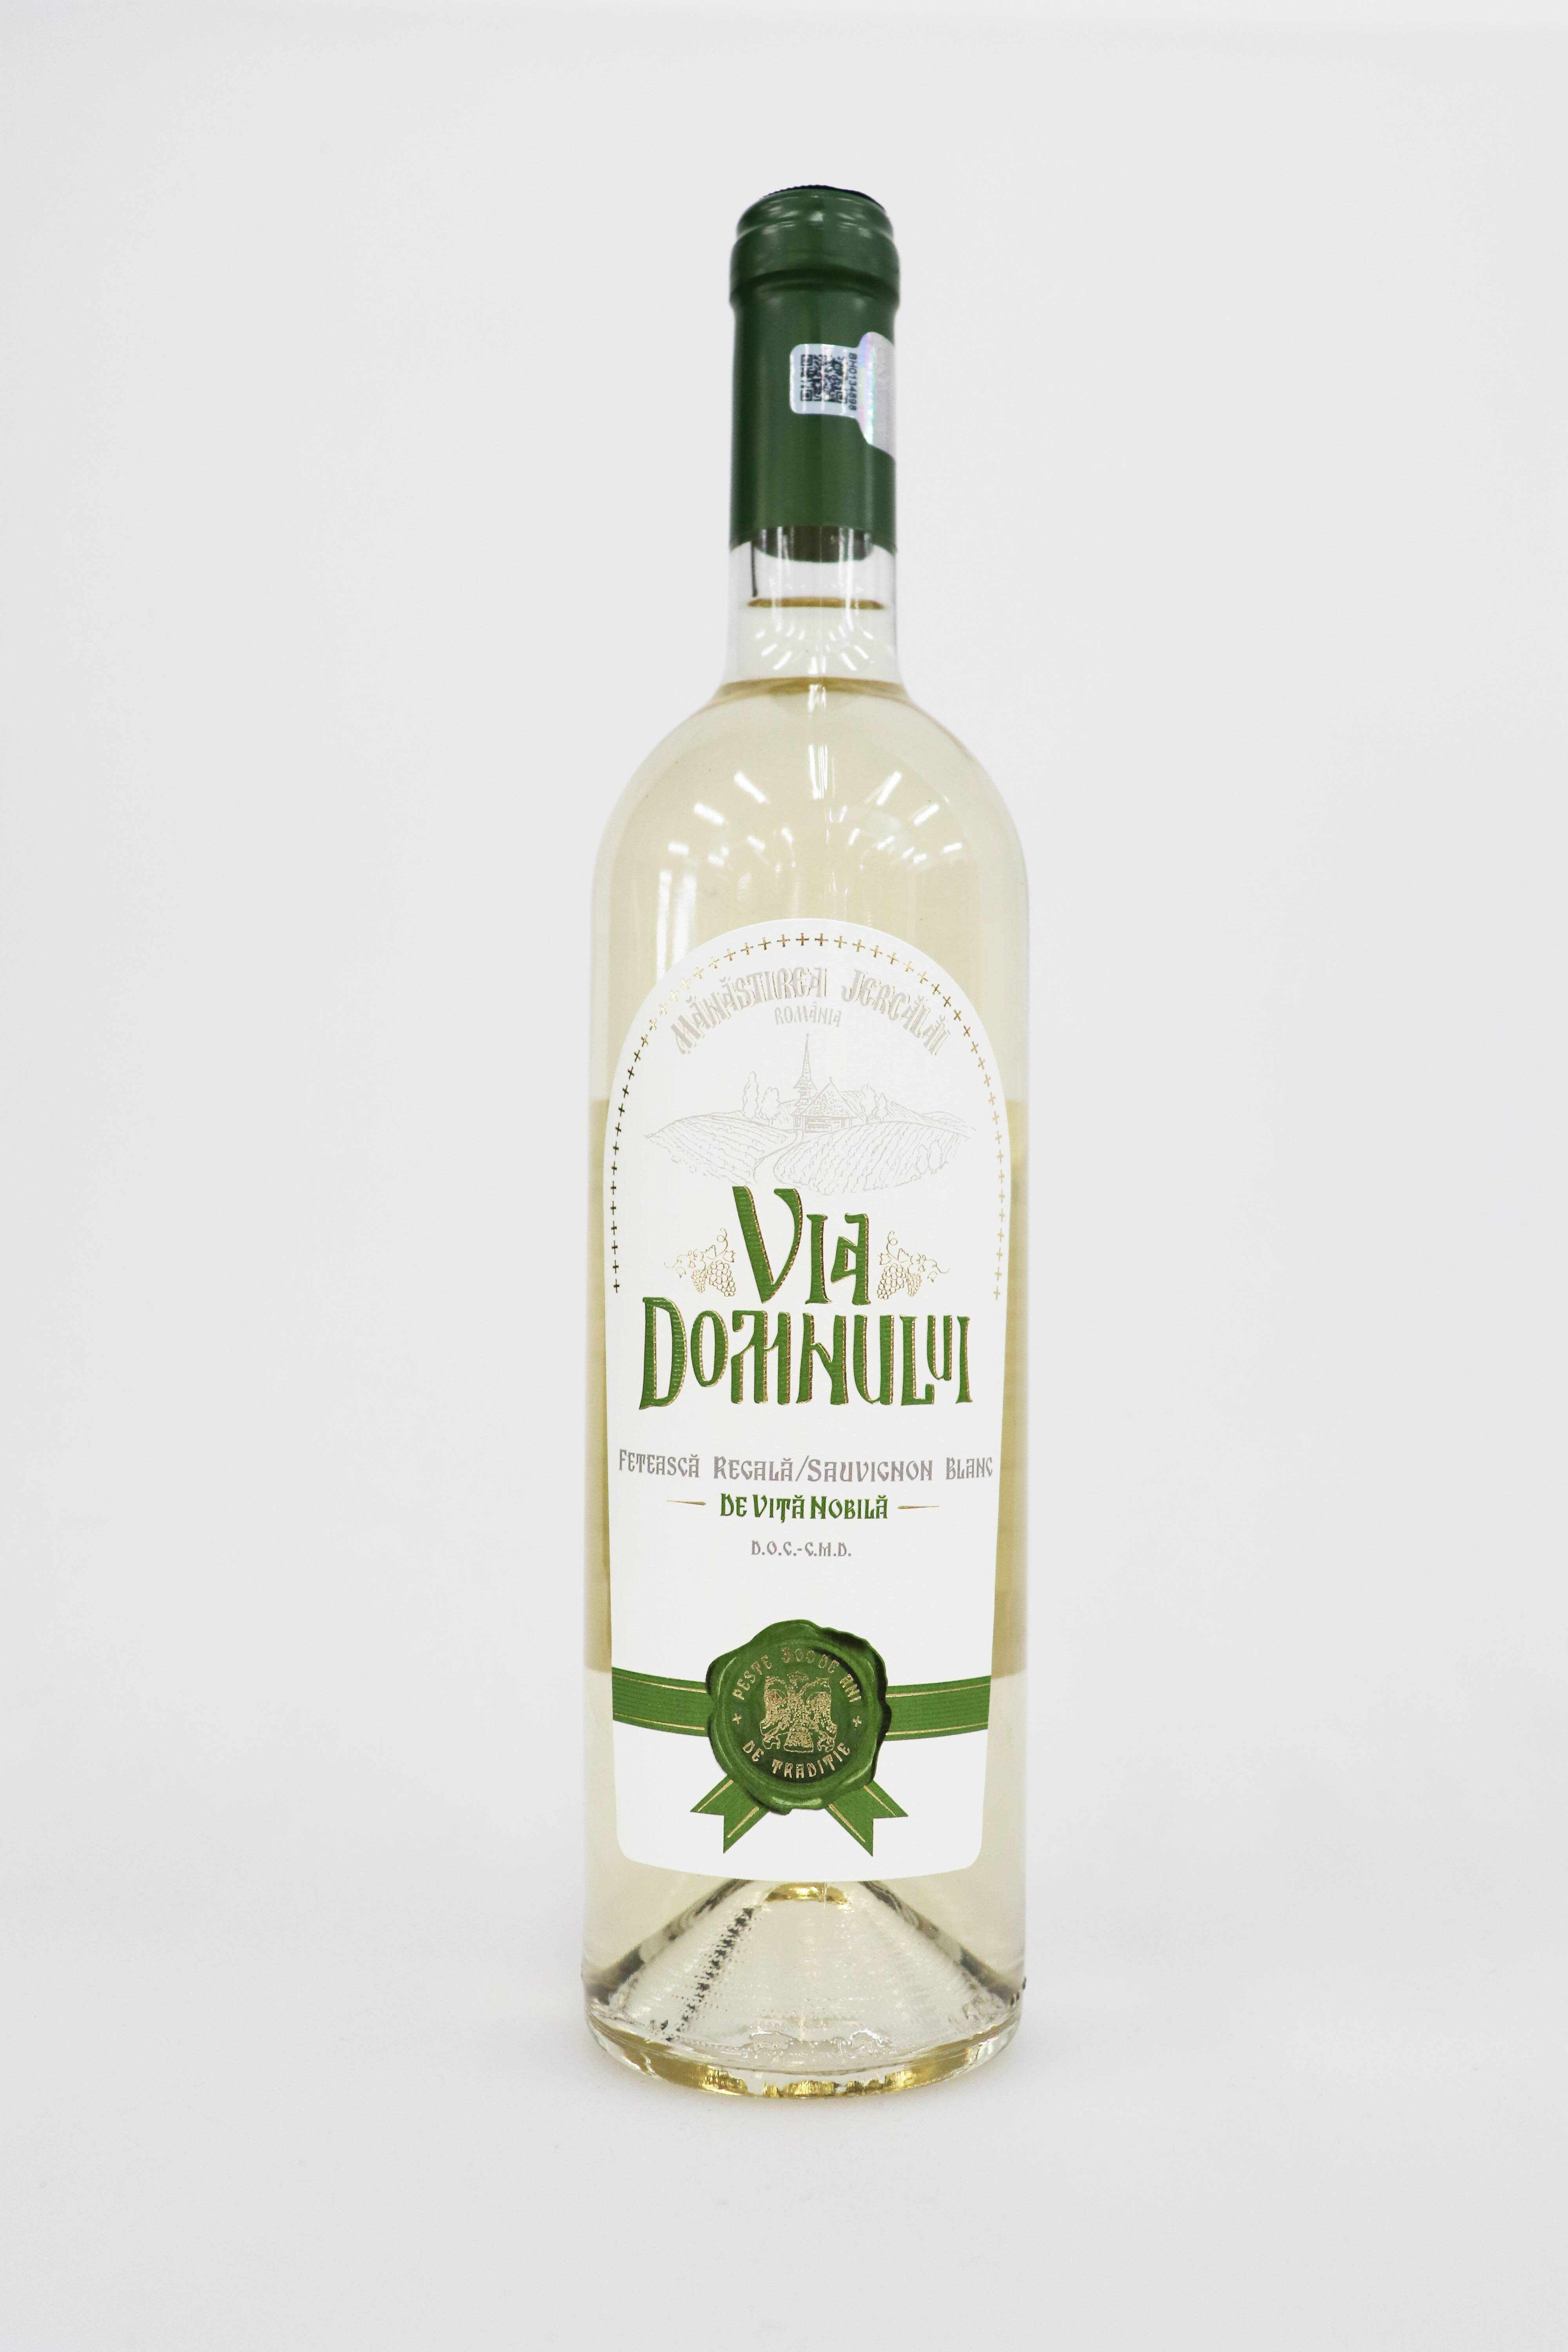 Vin alb - Feteasca Regala & Sauvignon Blanc, demisec, 2019 | Via Domnului